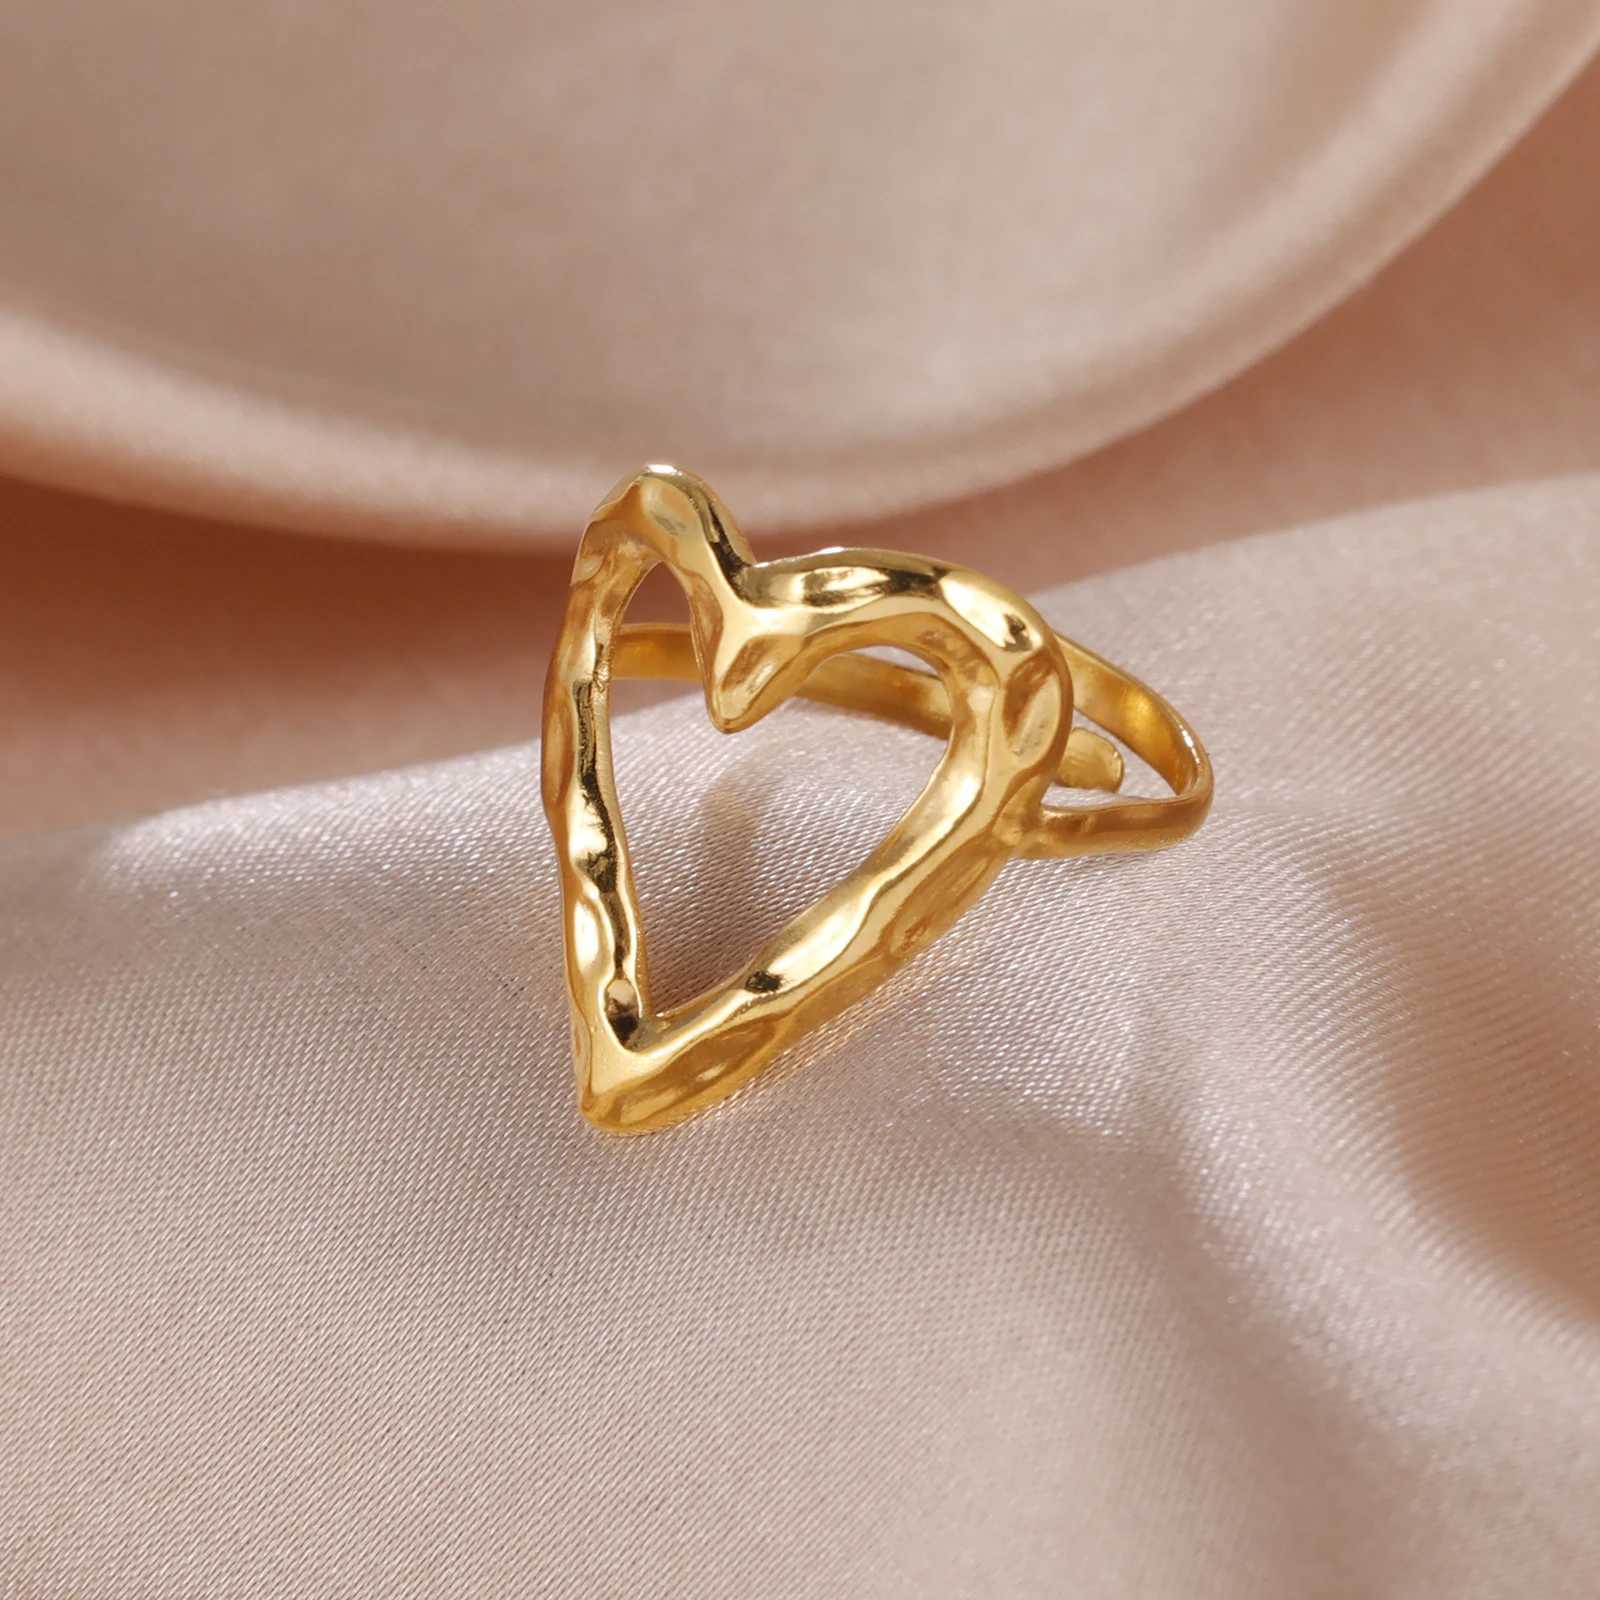 Bröllopsringar skyrim ny i kvinnor stora hjärtring rostfritt stål guld färg minimalistiska öppna ringar smycken valentiner dag gåva grossist